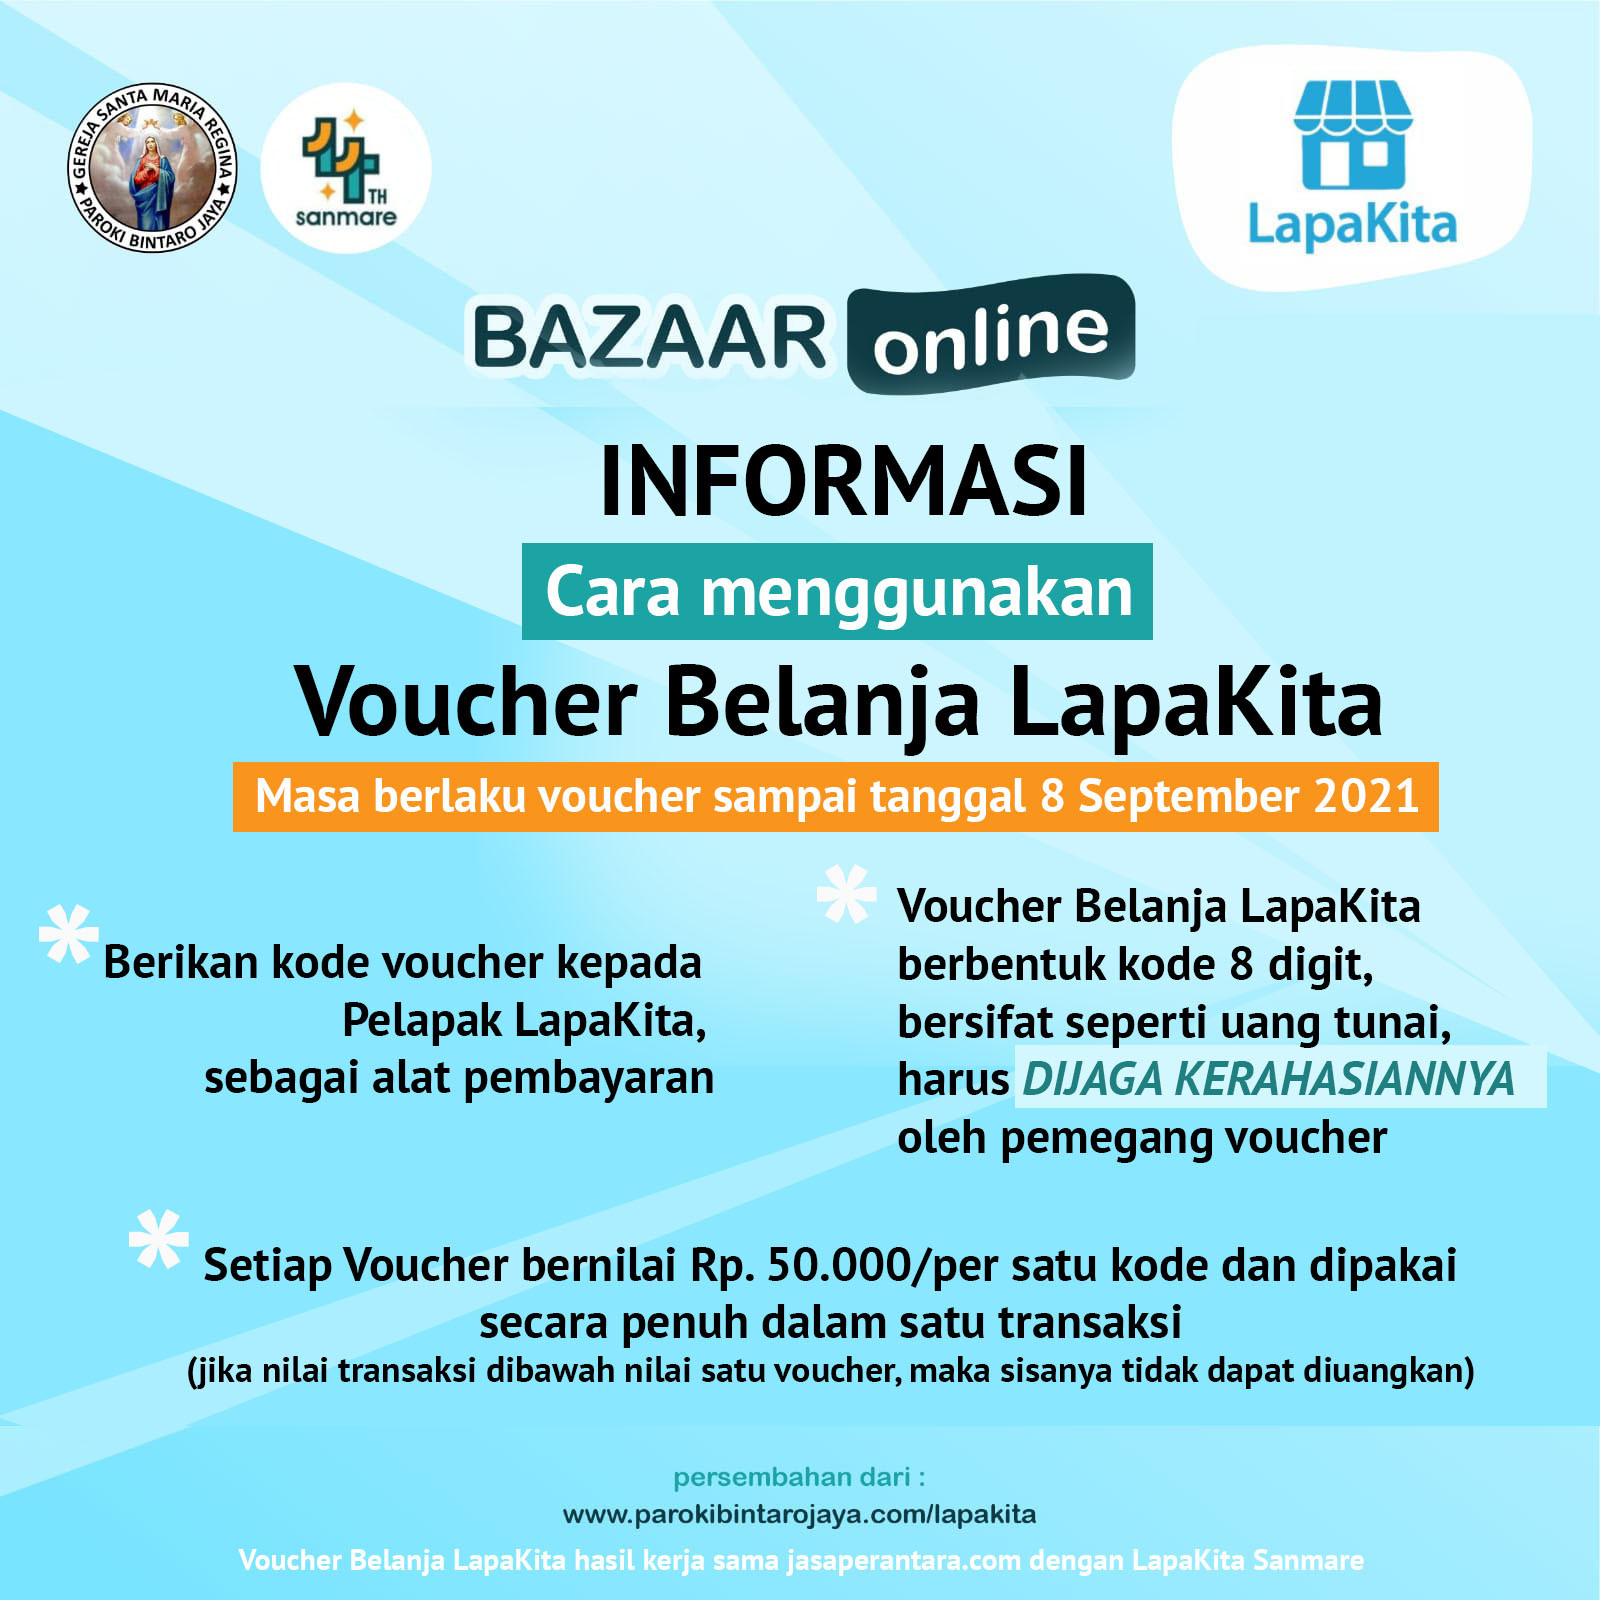 Informasi cara menggunakan voucher belanja LapaKita